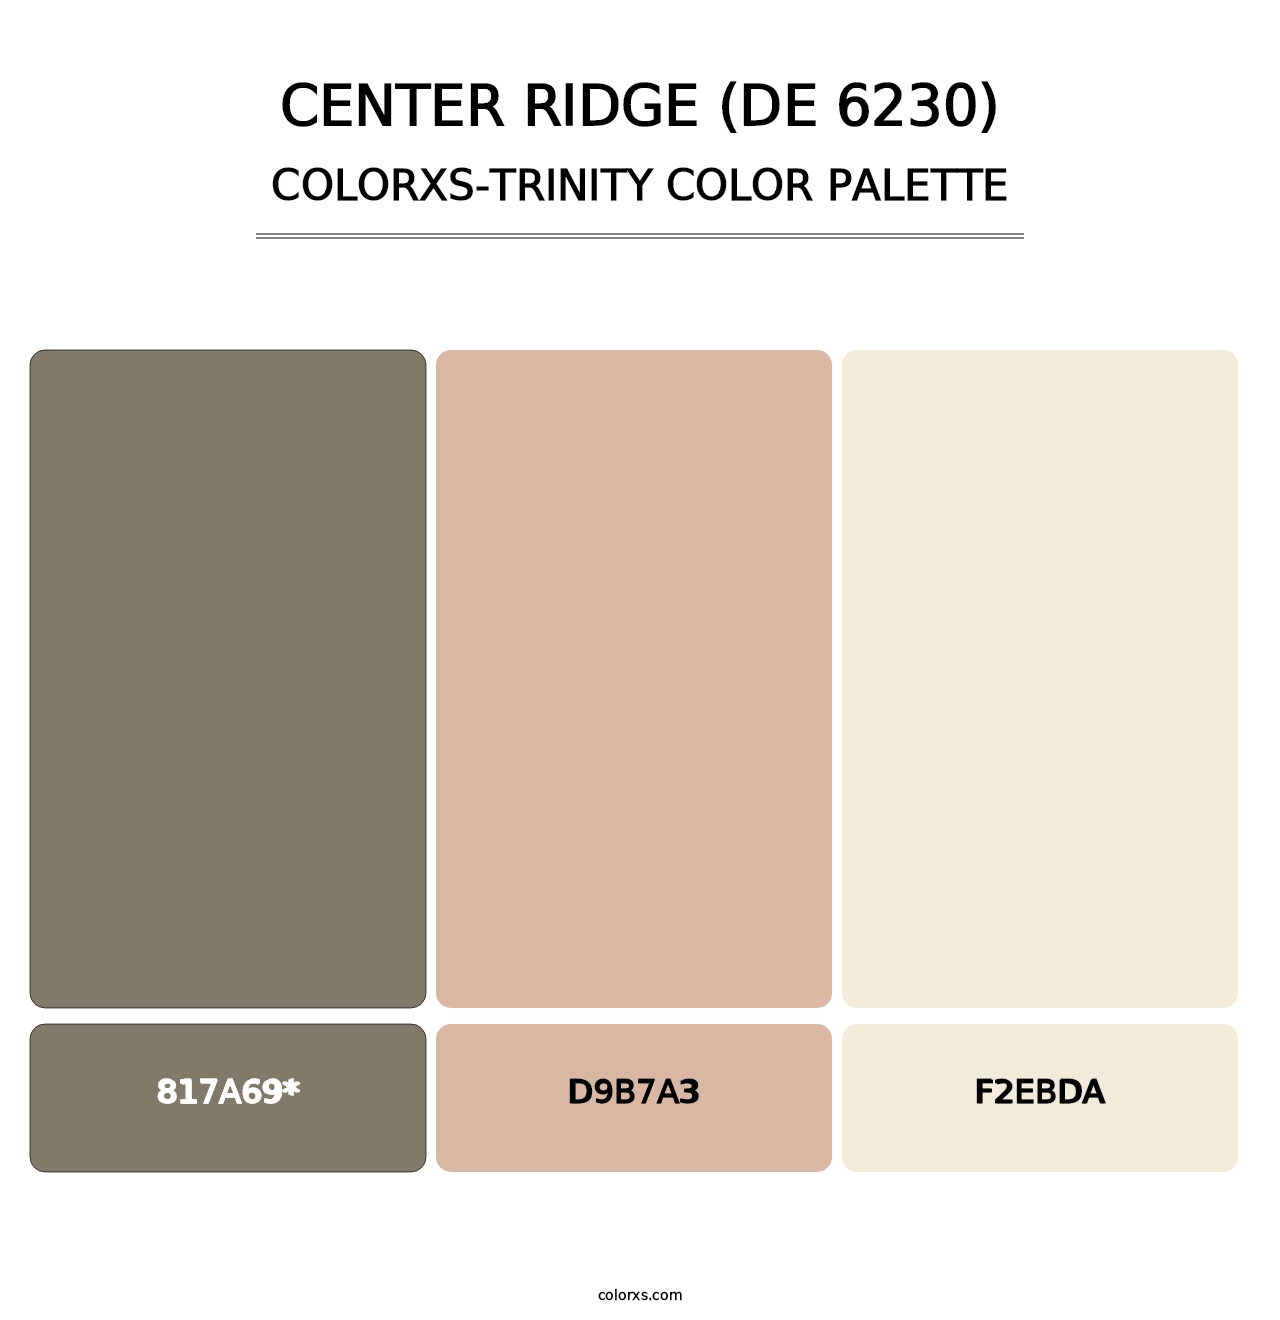 Center Ridge (DE 6230) - Colorxs Trinity Palette